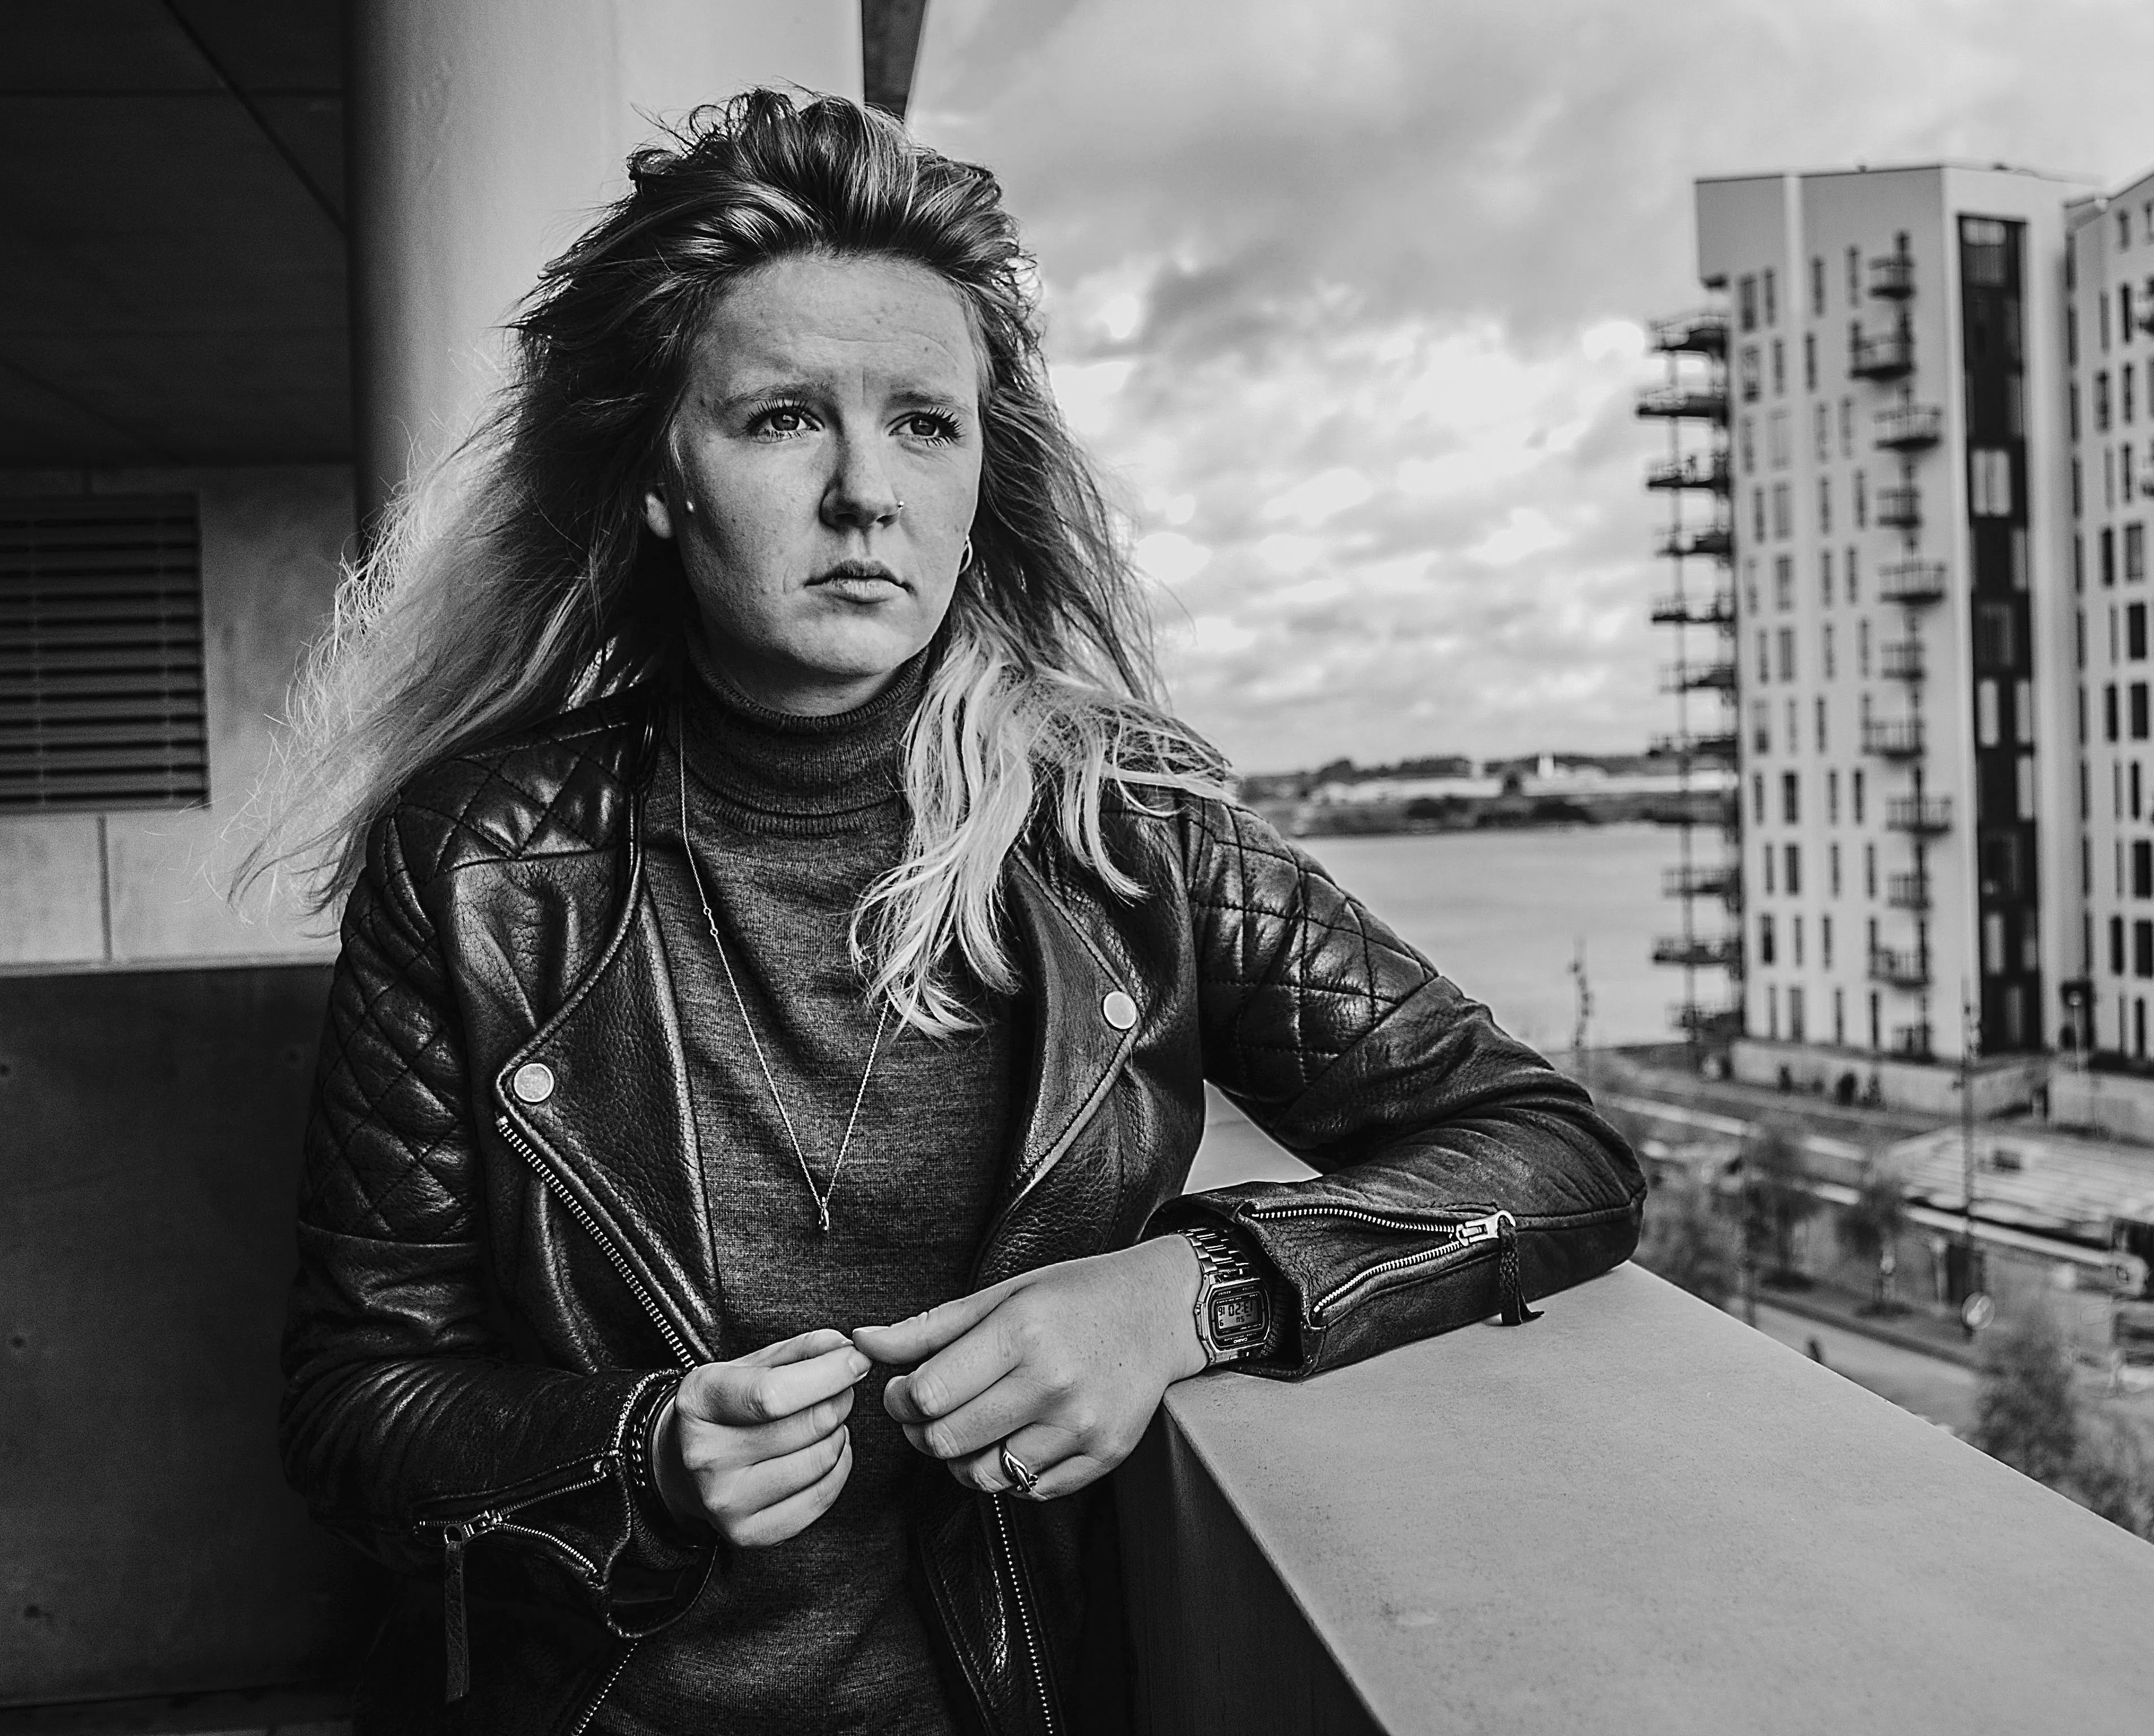 Rikke Thomsen-interview: "Vores dialekt gør os til dem, vi er"